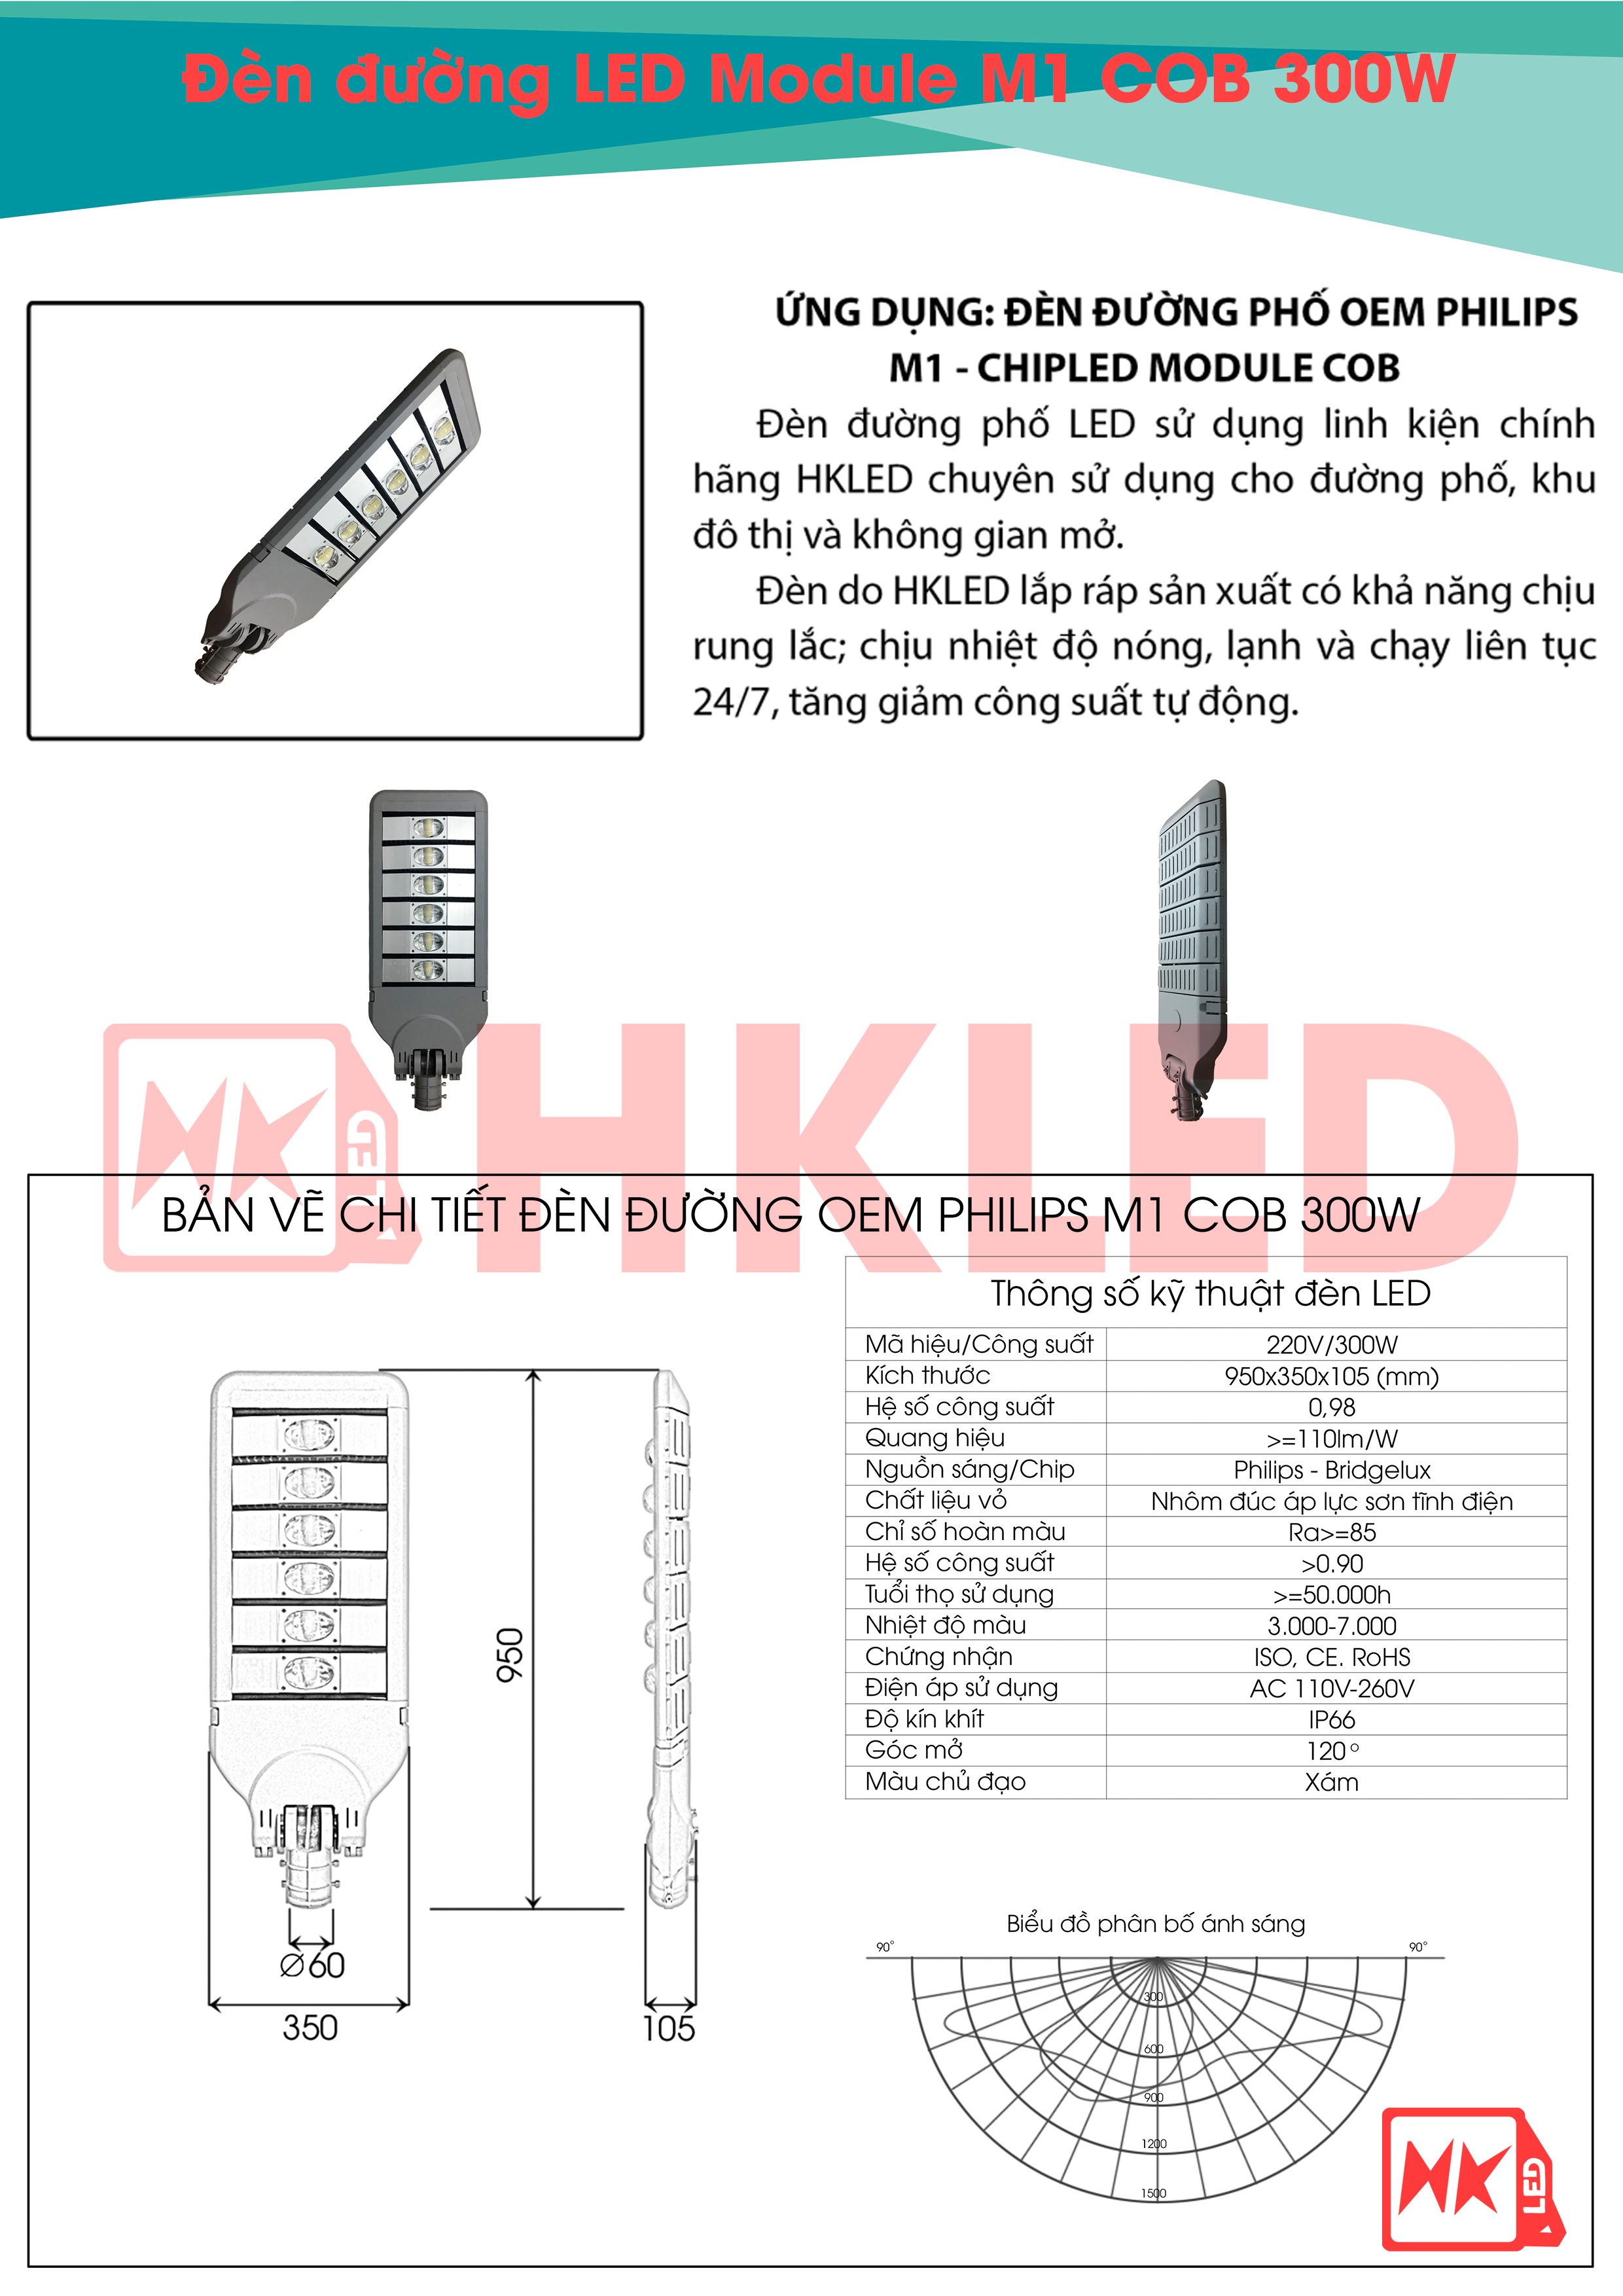 Ứng dụng, bản vẽ chi tiết và thông số kỹ thuật đèn đường LED OEM Philips M1 Module COB 300W